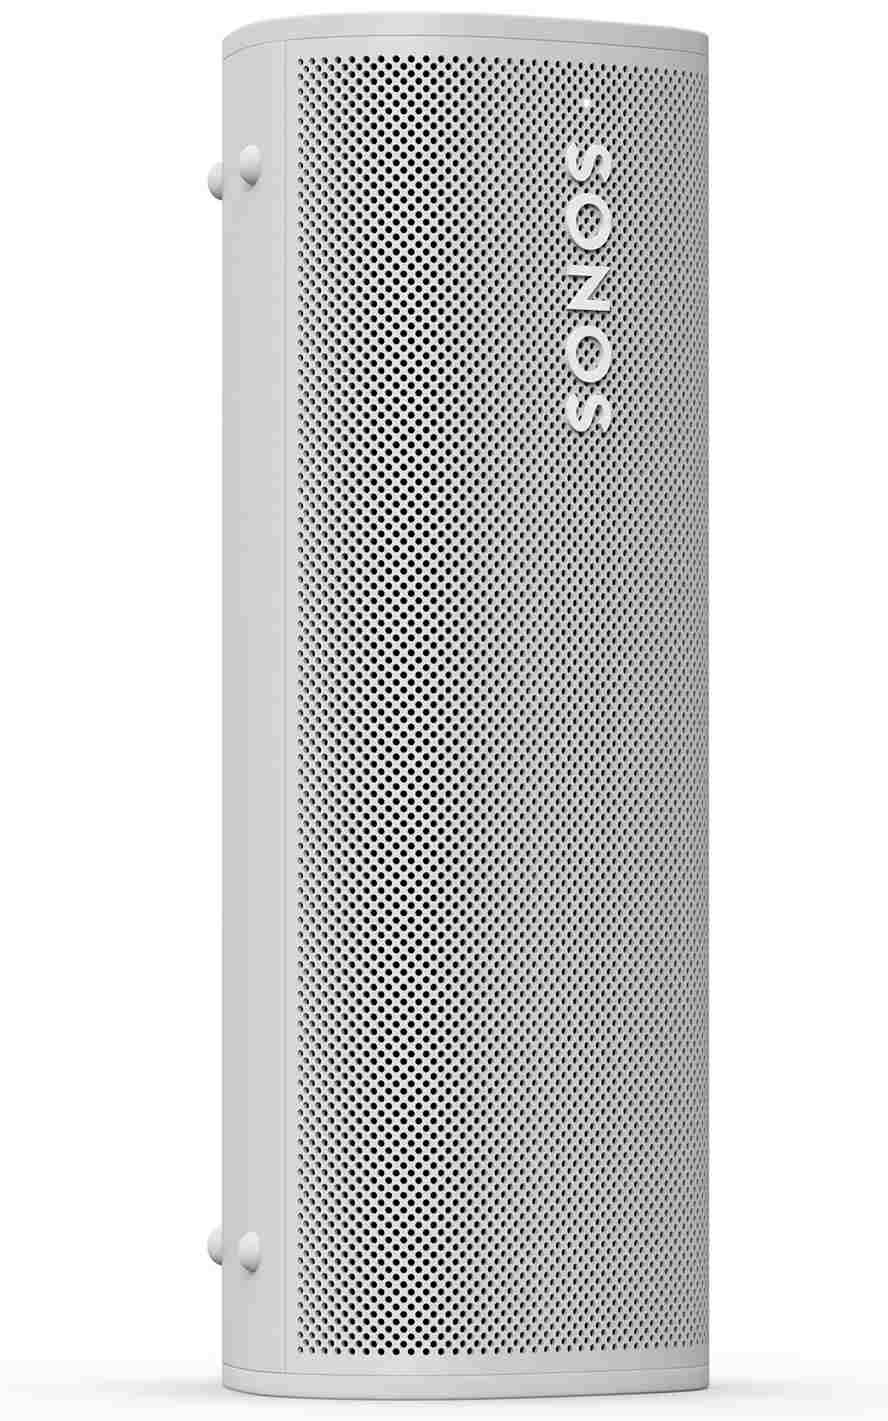 Sonos Roam wit - frontaanzicht - Bluetooth speaker